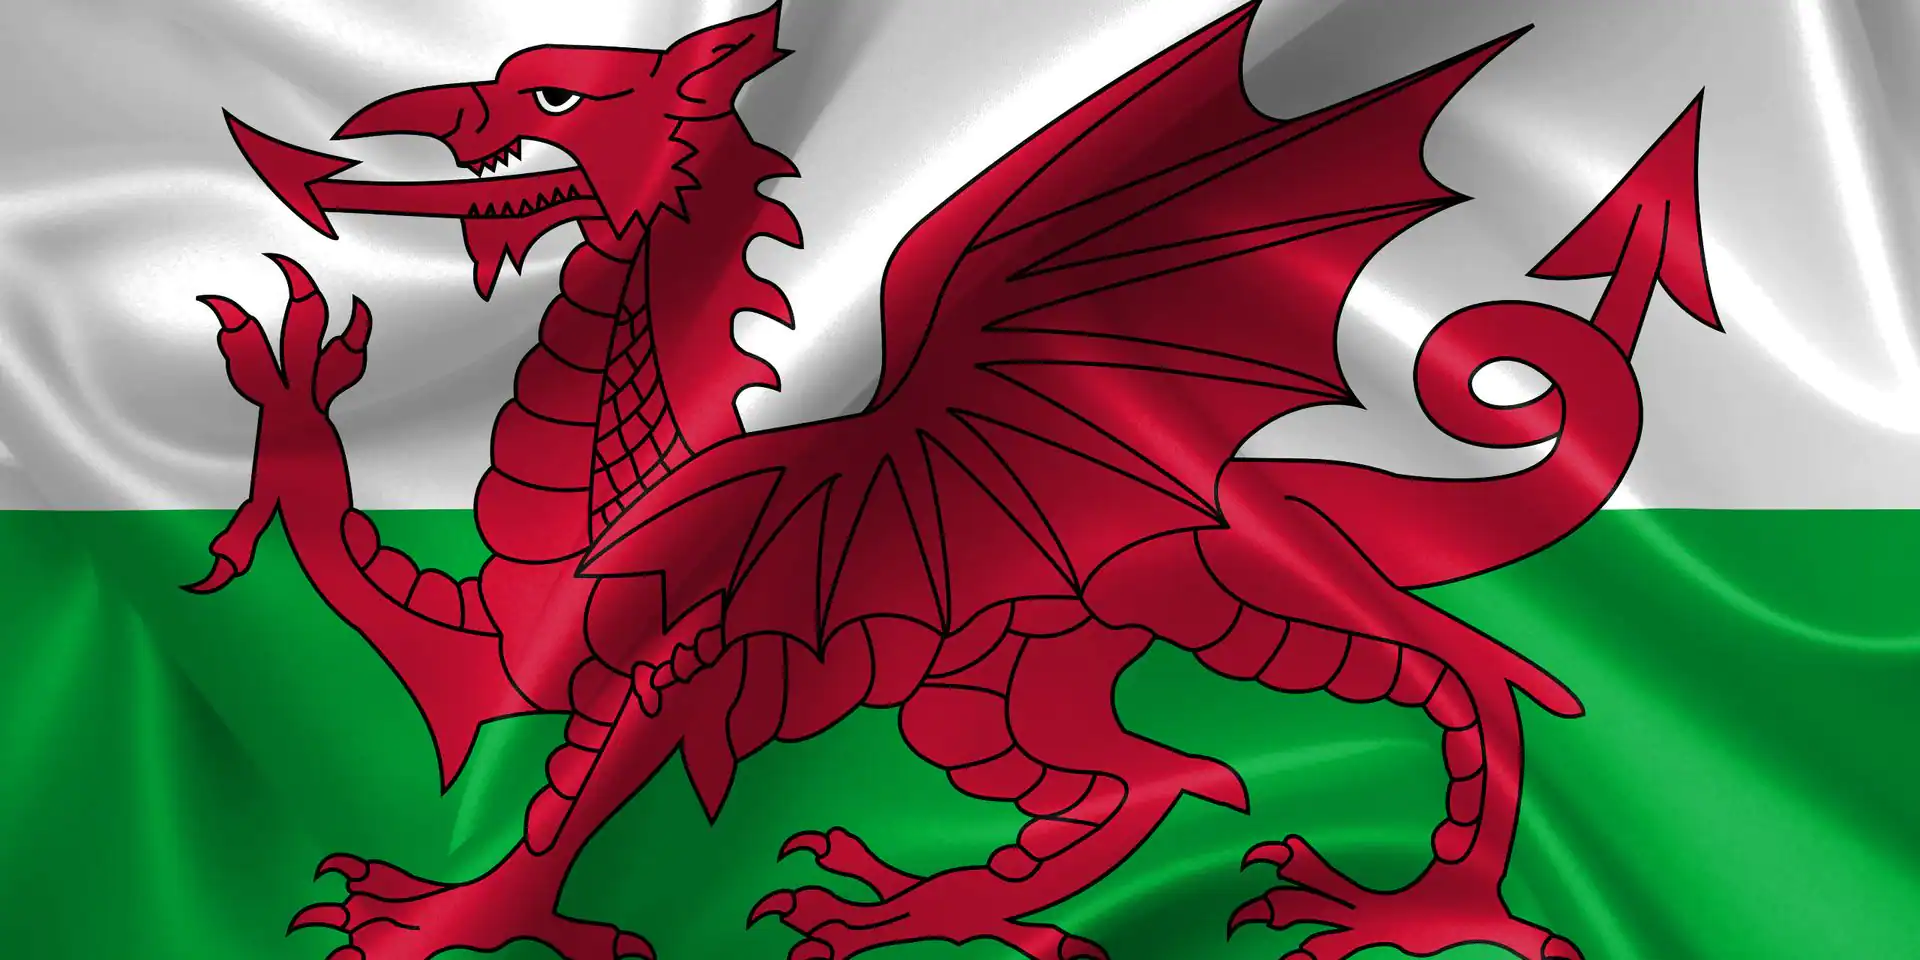 Wales avaa historian ensimmäisen keskuksensa padel